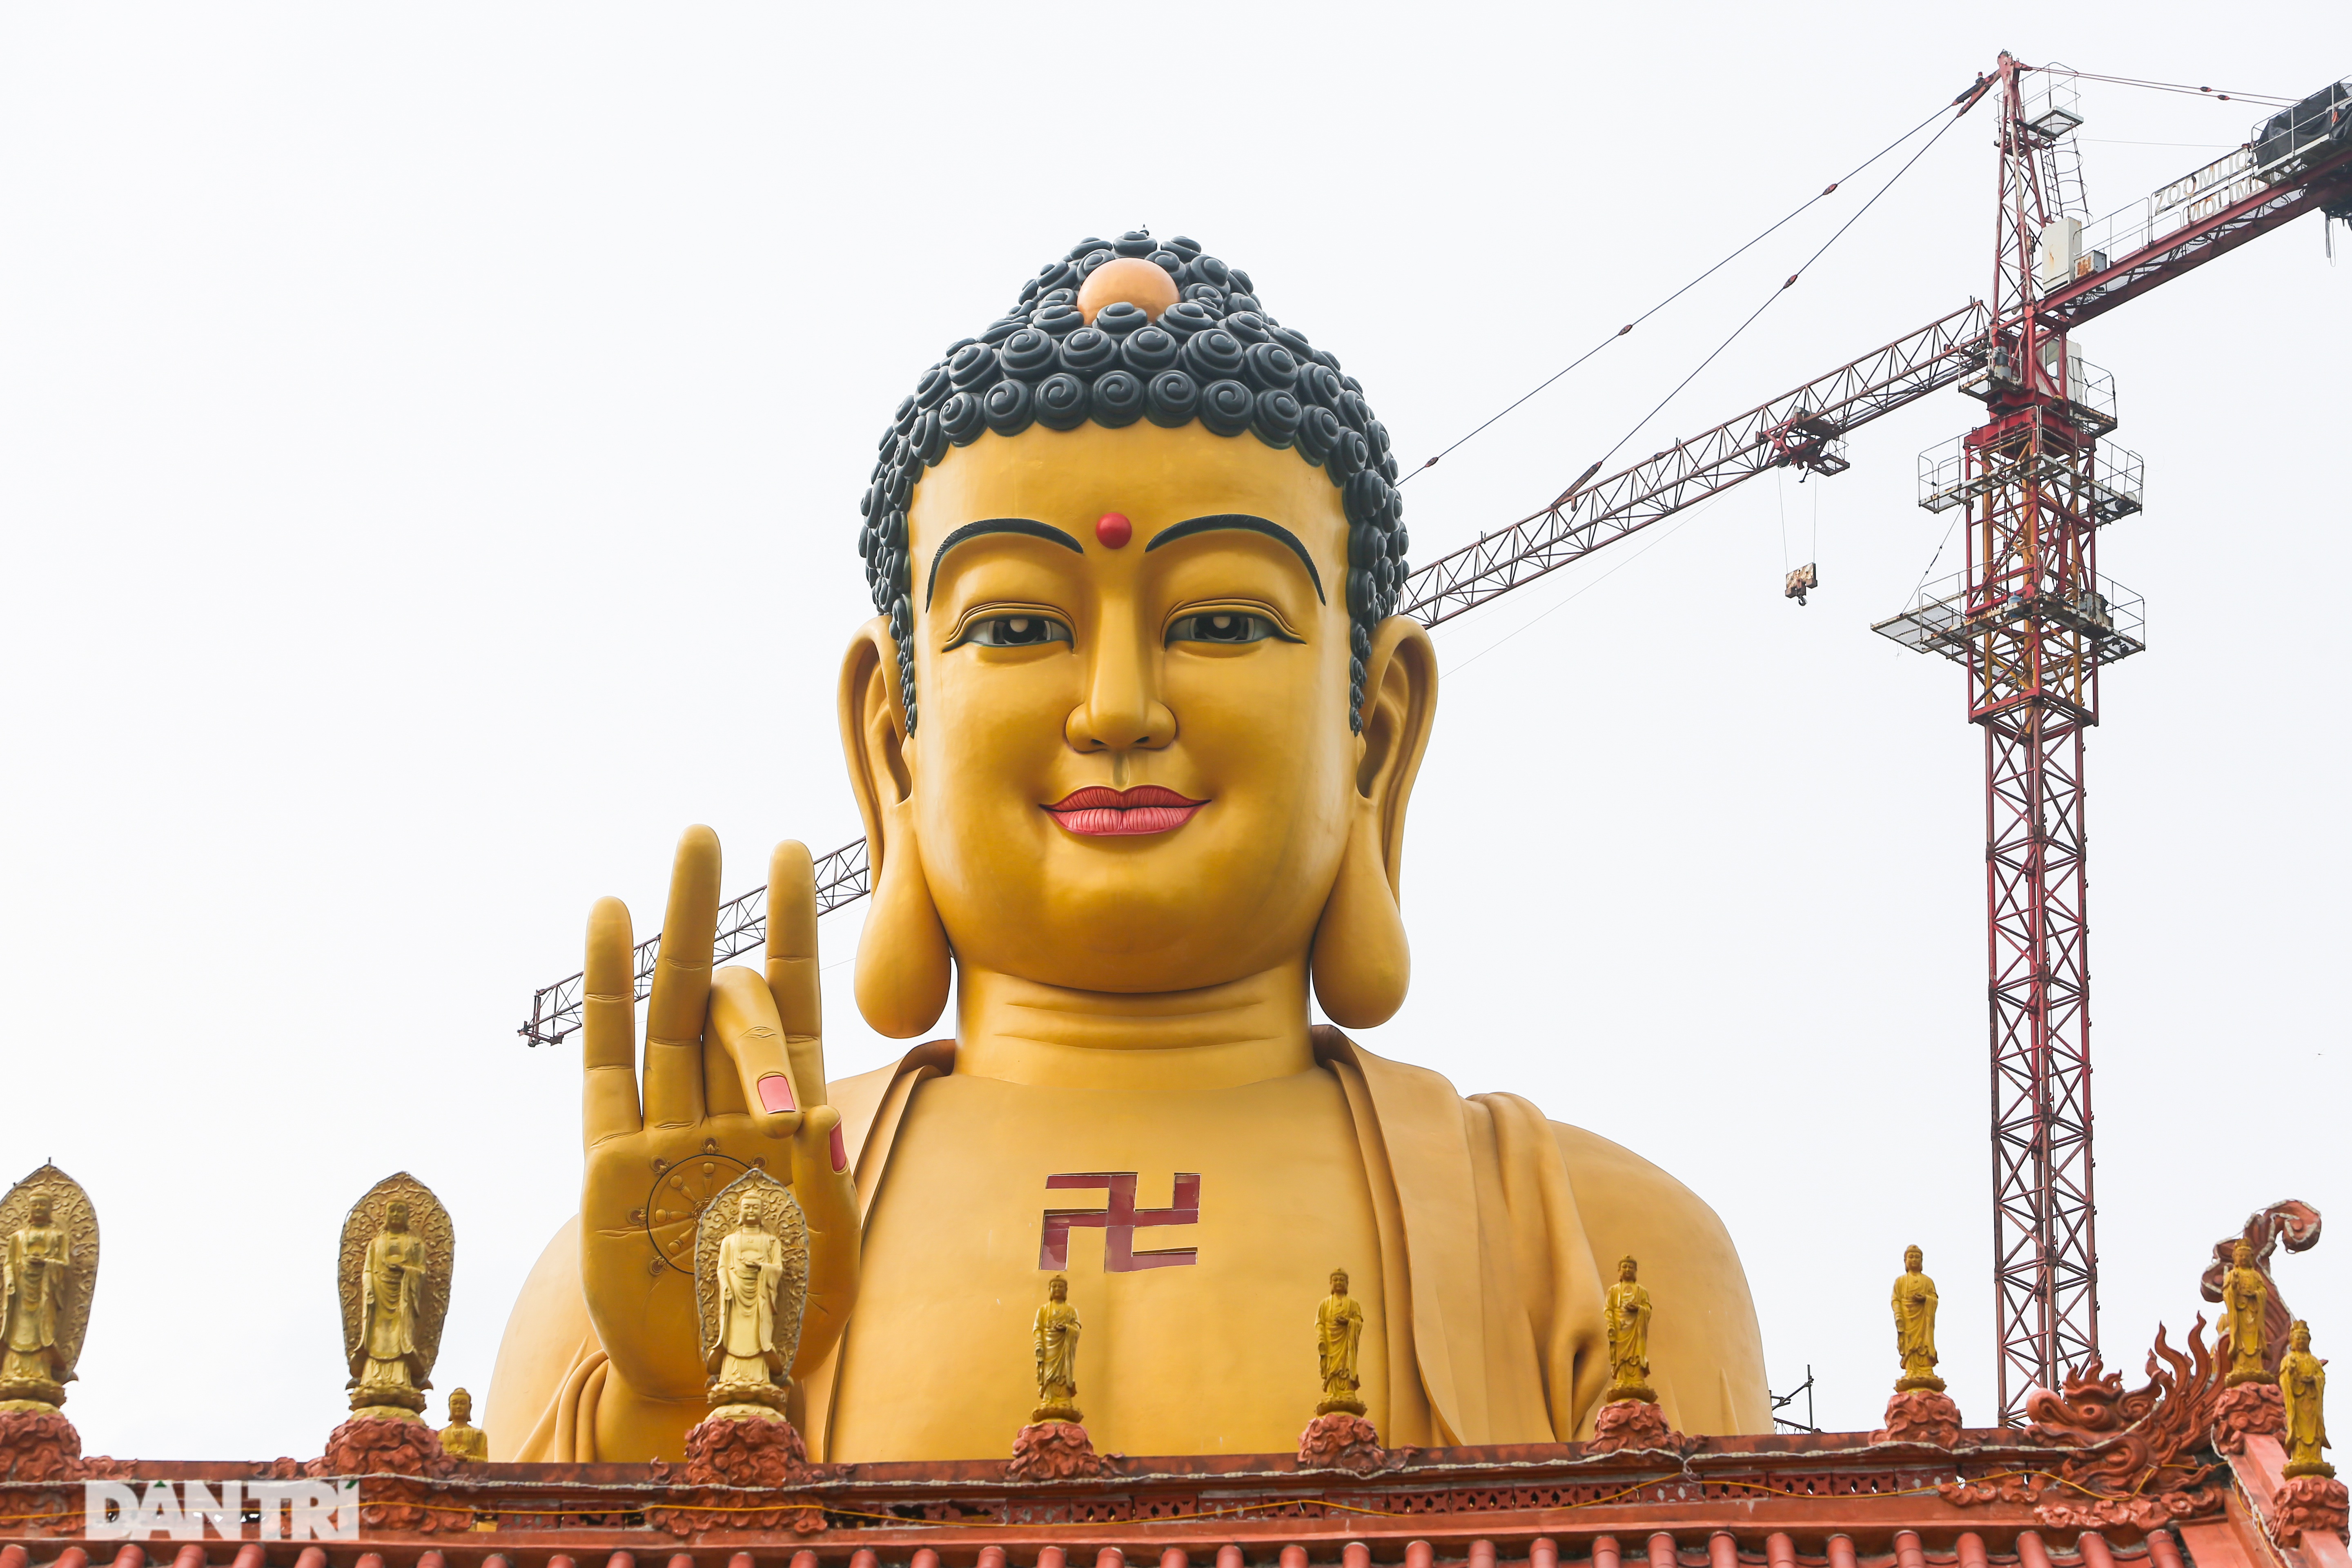  Đức Phật được tạo hình mỗi bên mắt dài 2m30, Kim khẩu (miệng) Đức Phật rộng 3m30.